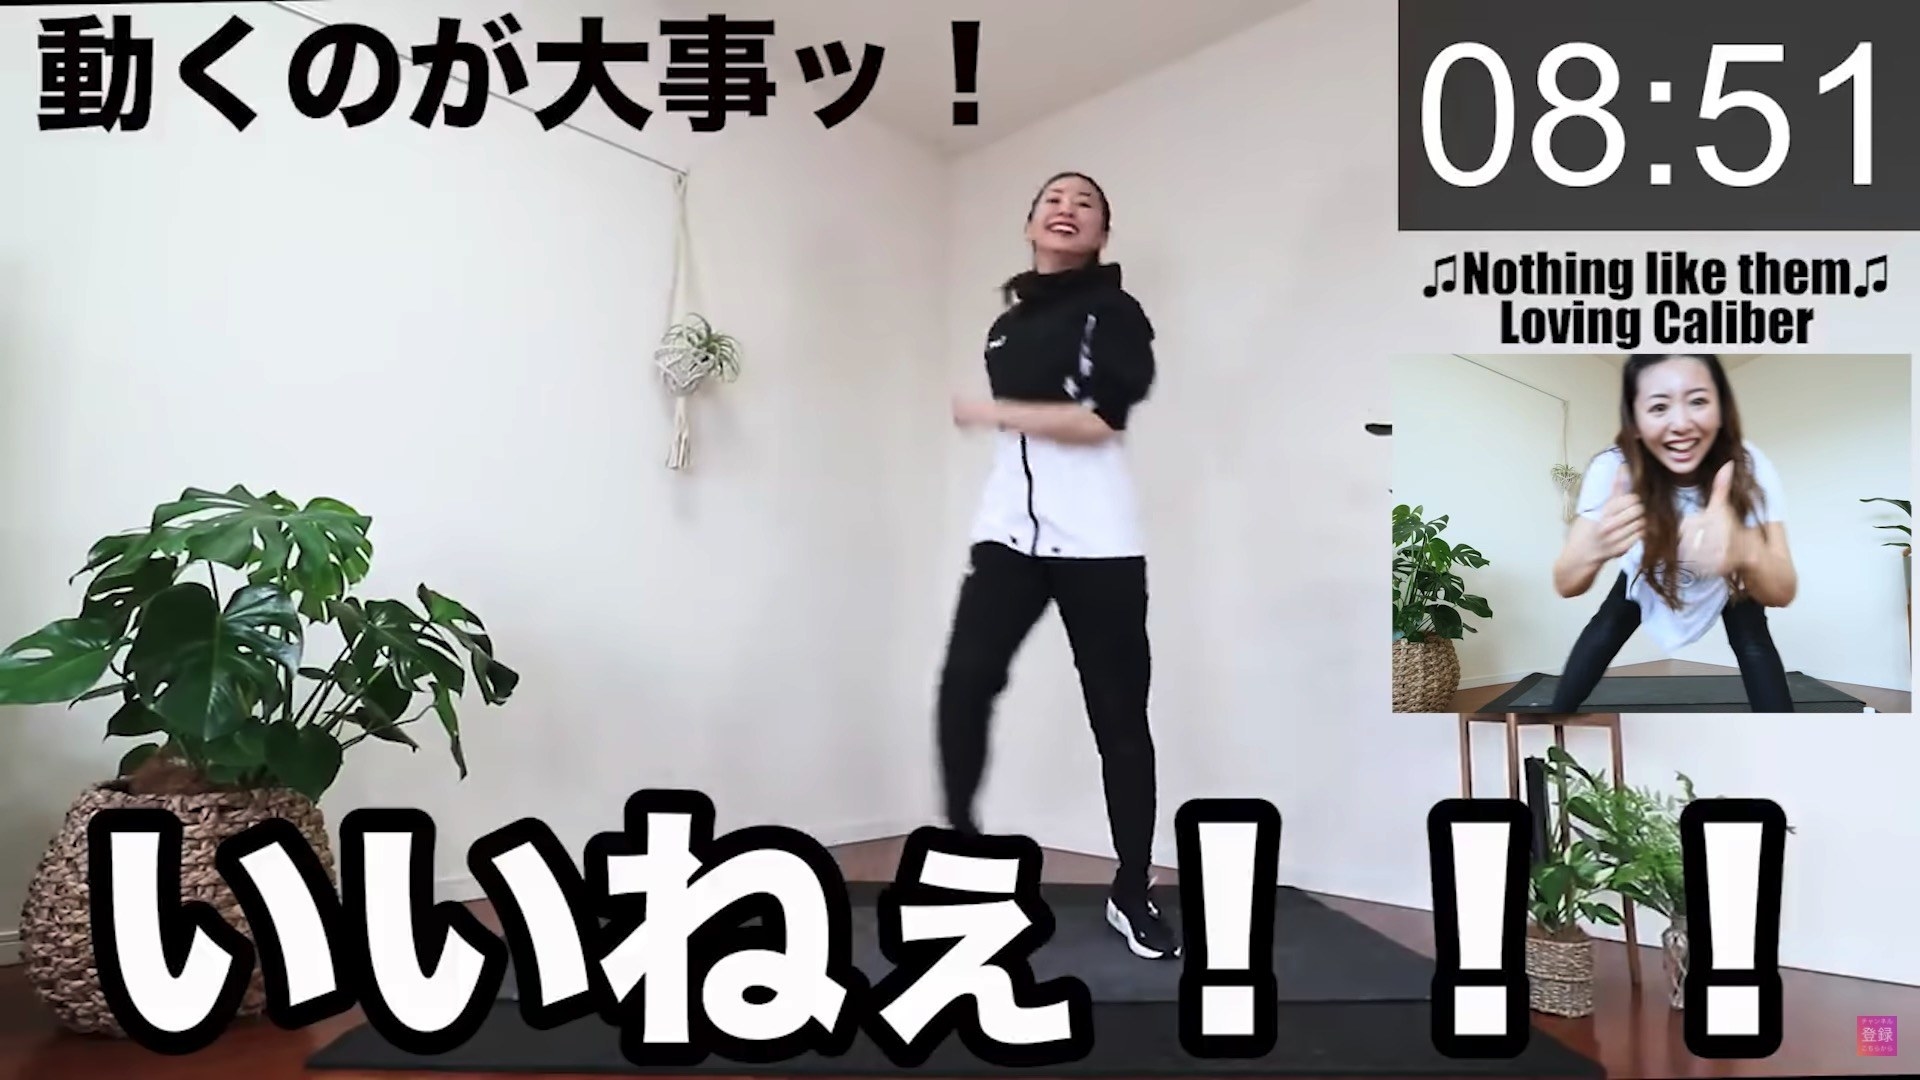 Youtube 音楽 まりな 竹脇 竹脇まりなのyoutubeのダンスの曲名は？【地獄の11分】【HANDCLAP】の音楽